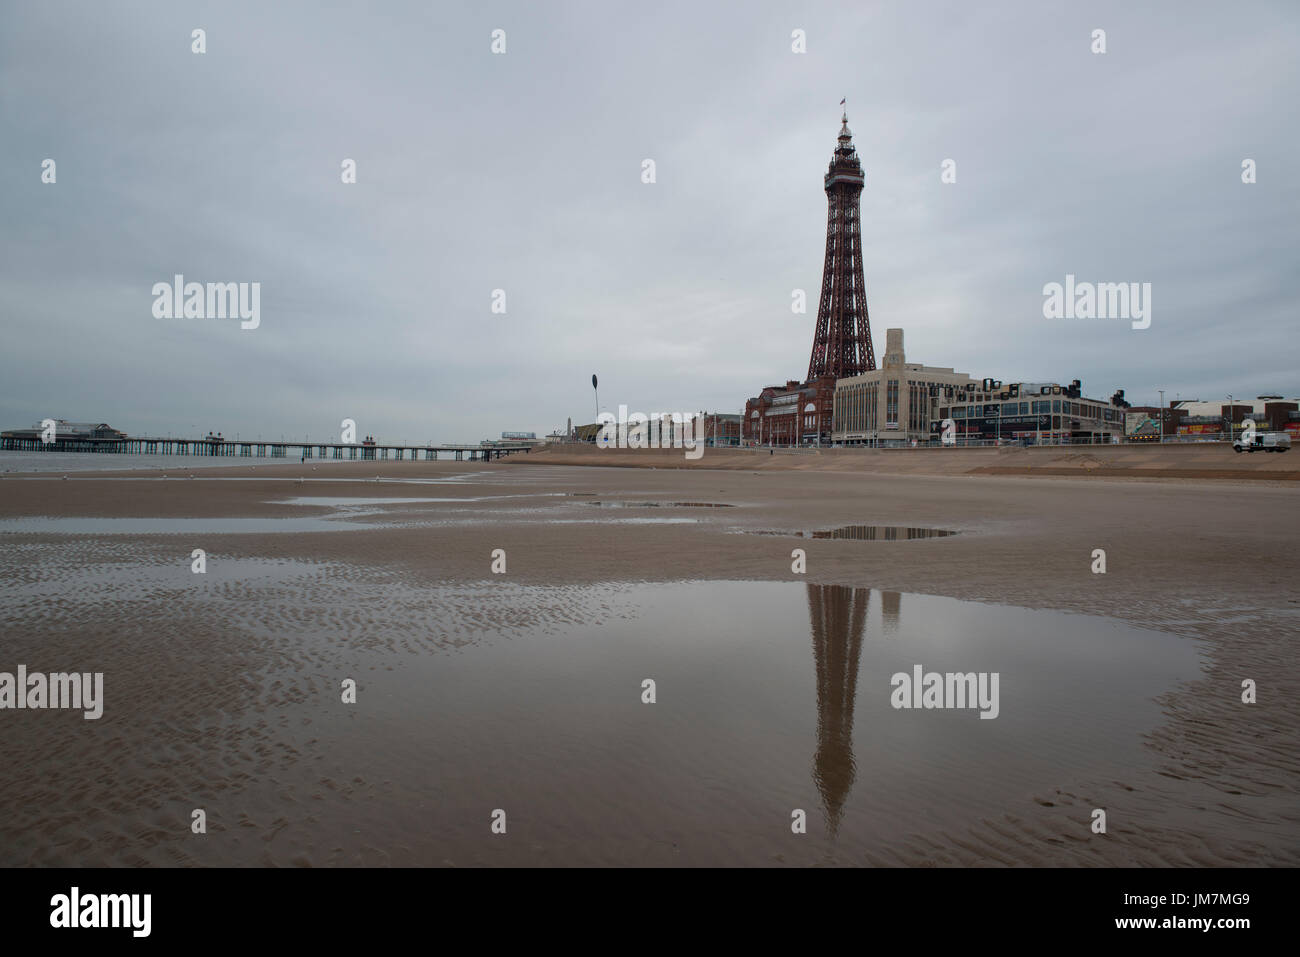 La tour de Blackpool, vue de la plage. crédit : lee ramsden / alamy Banque D'Images